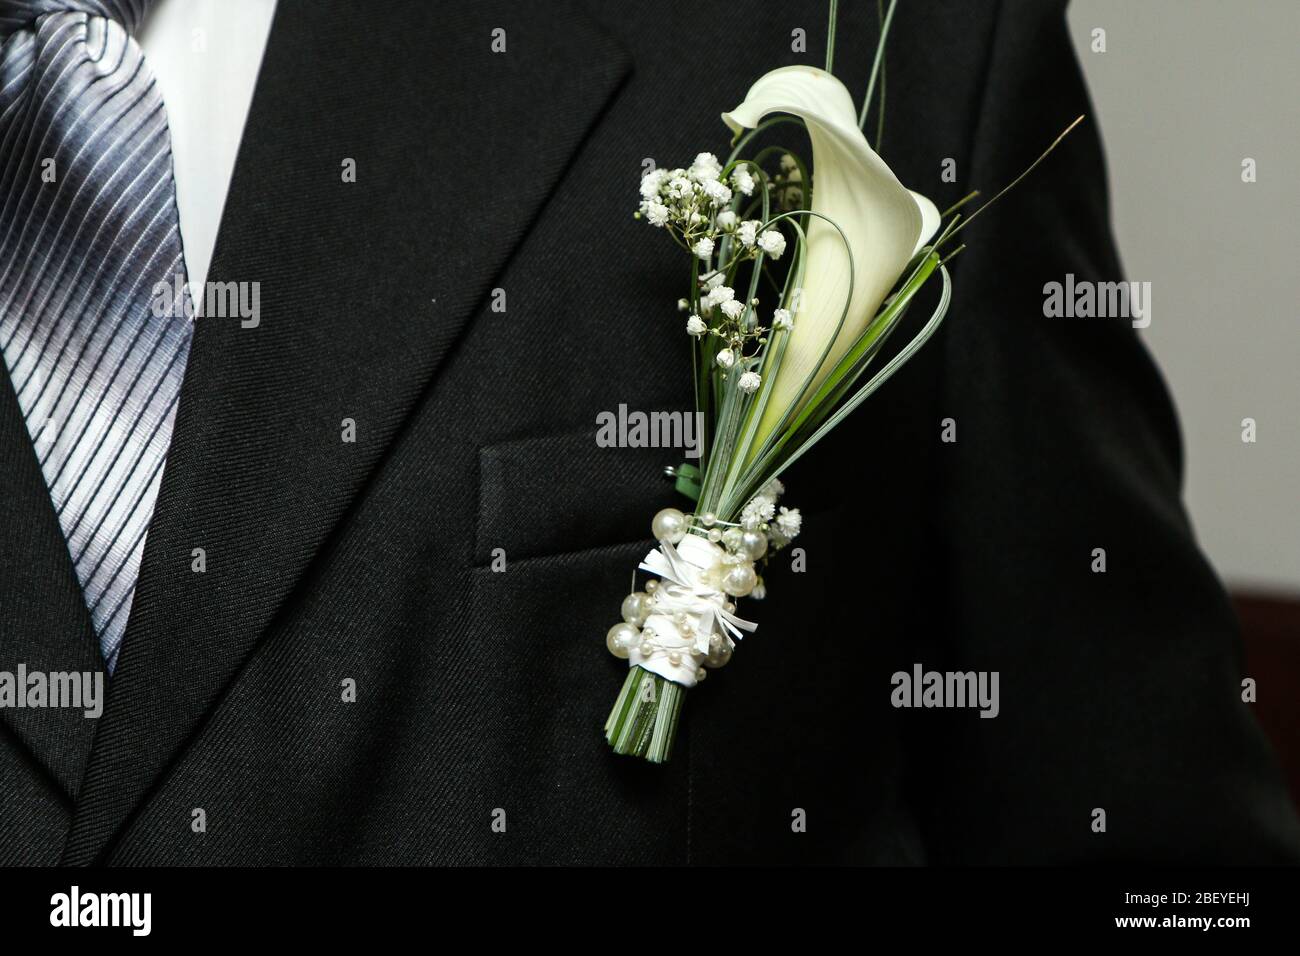 Une photo détaillée de la fleur du marié épinglée sur le costume. Une décoration traditionnelle pour le mariage. Banque D'Images